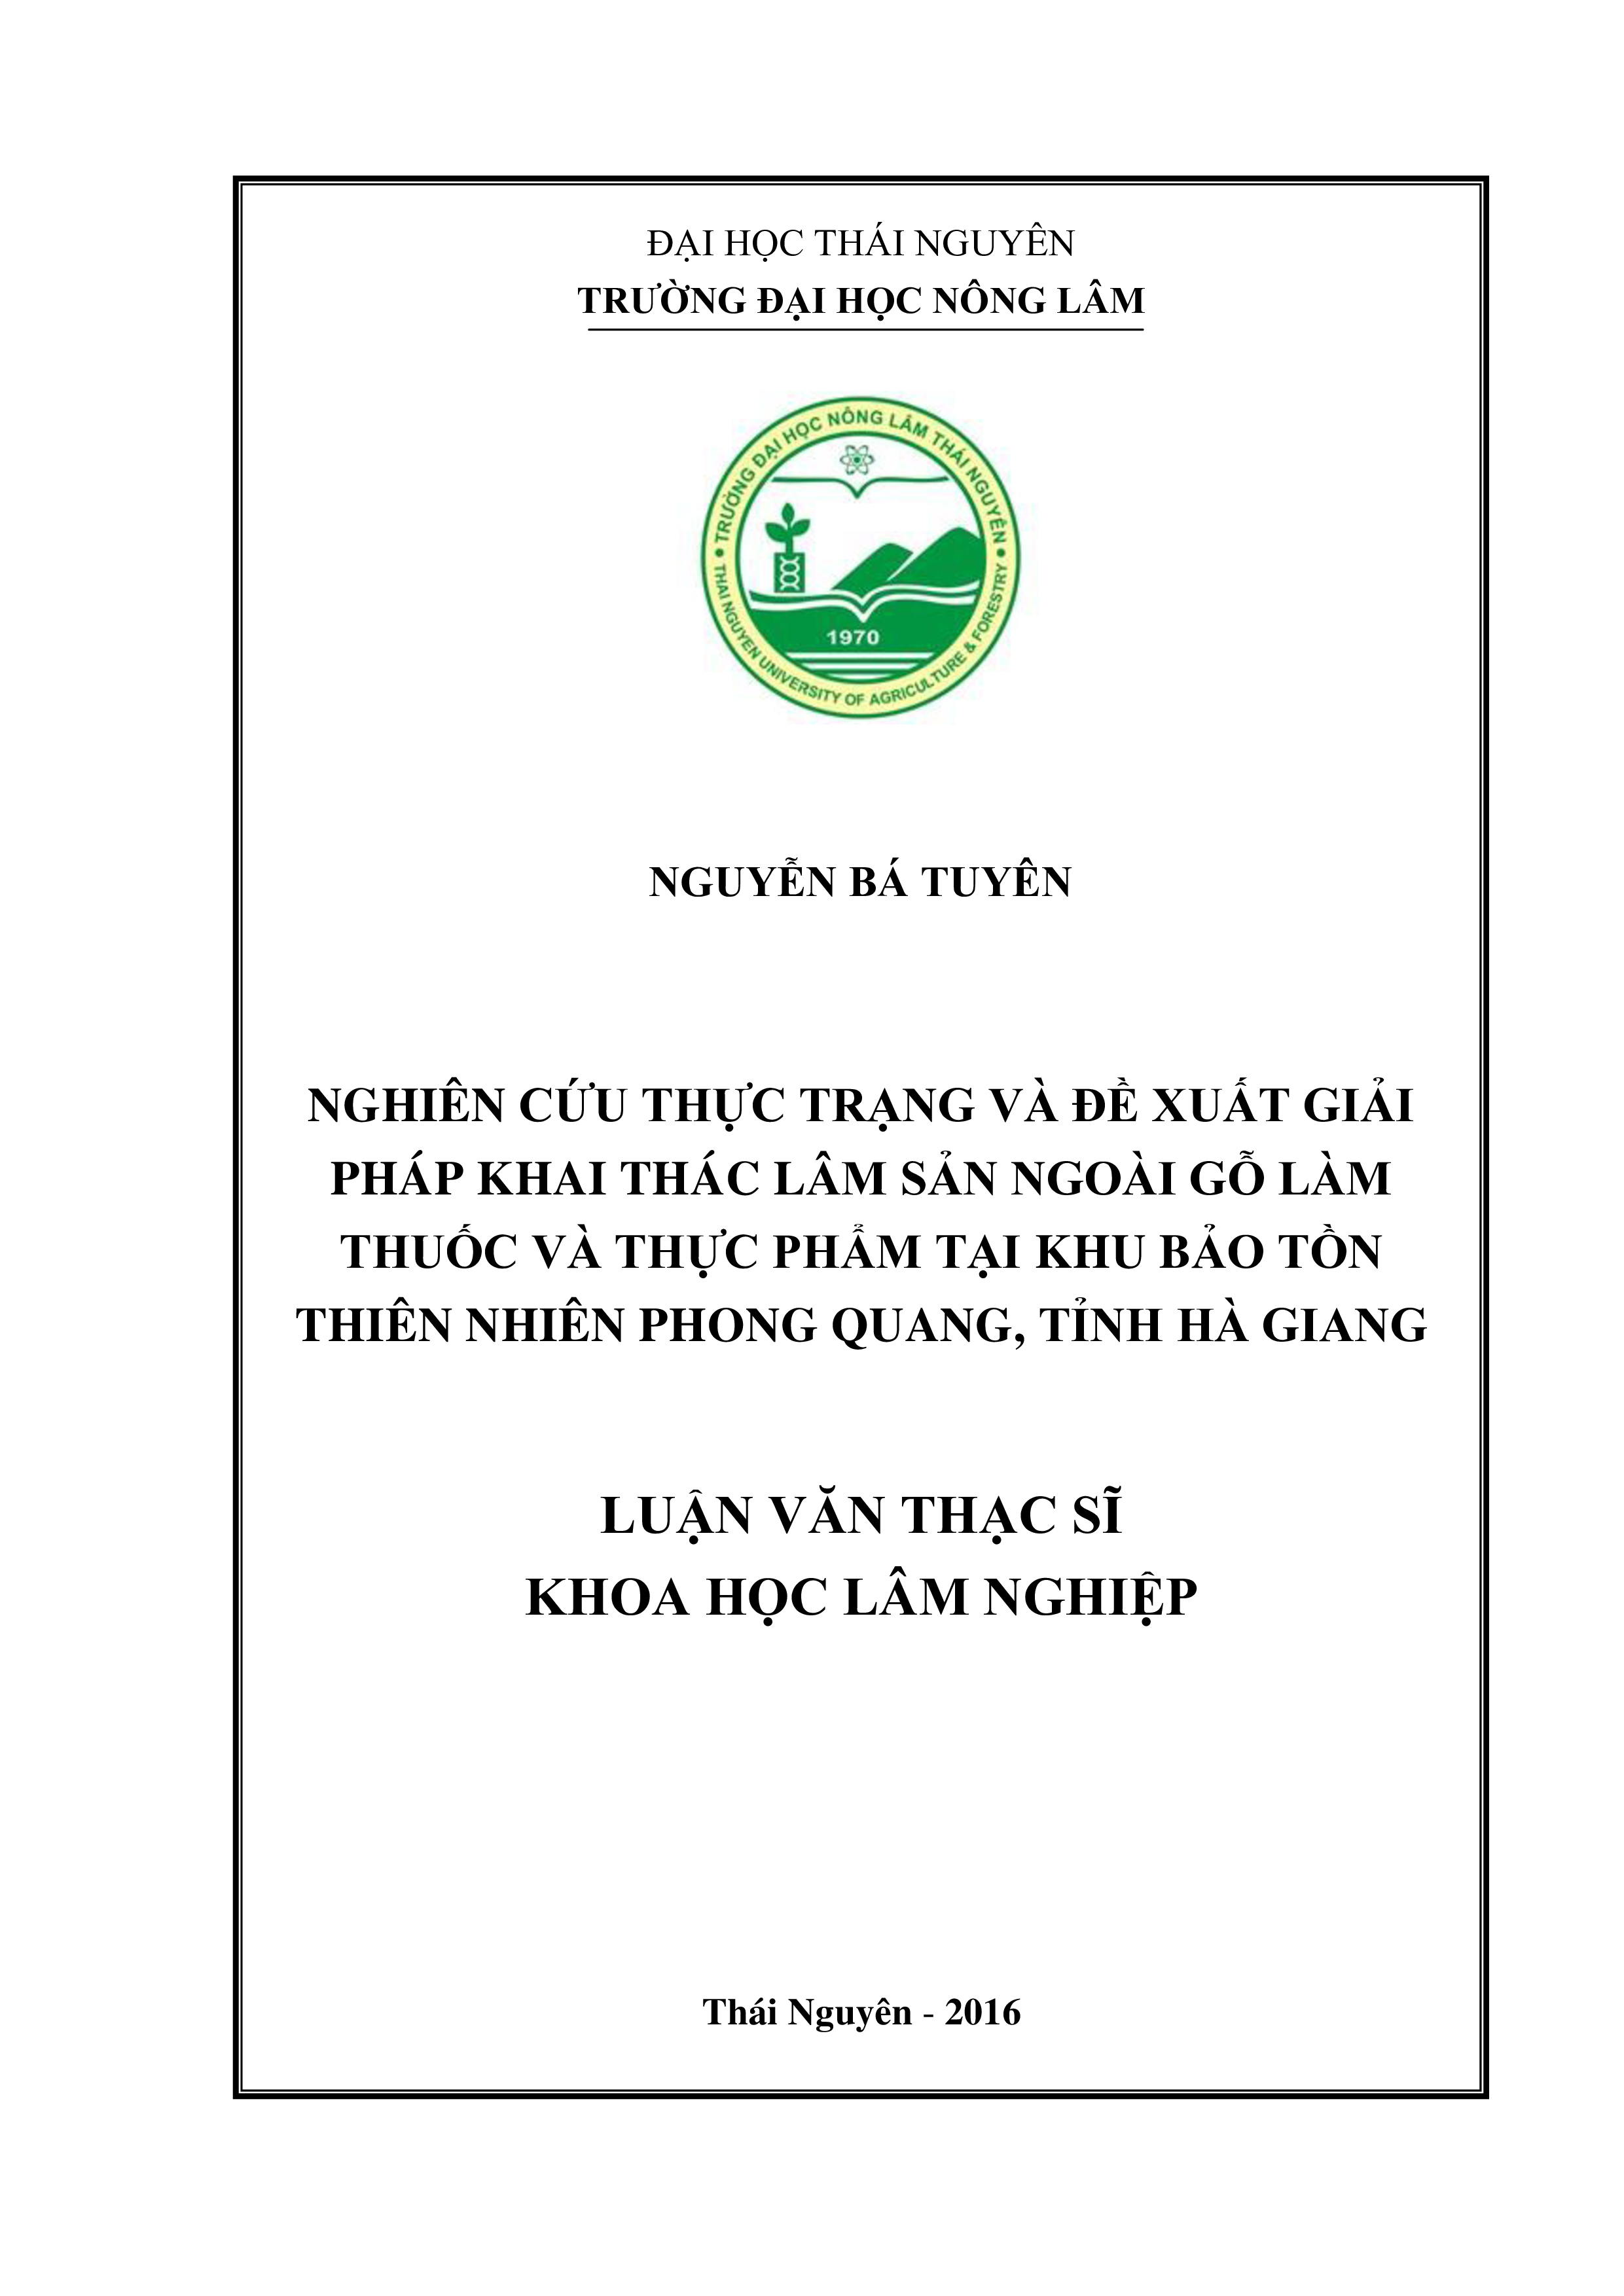 Nghiên cứu thực trạng và đề xuất  giải pháp khai thác  Lâm sản ngoài gỗ làm thuốc và thực phẩm tại Khu  bảo tồn  thiên nhiên Phong Quang, tỉnh Hà Giang